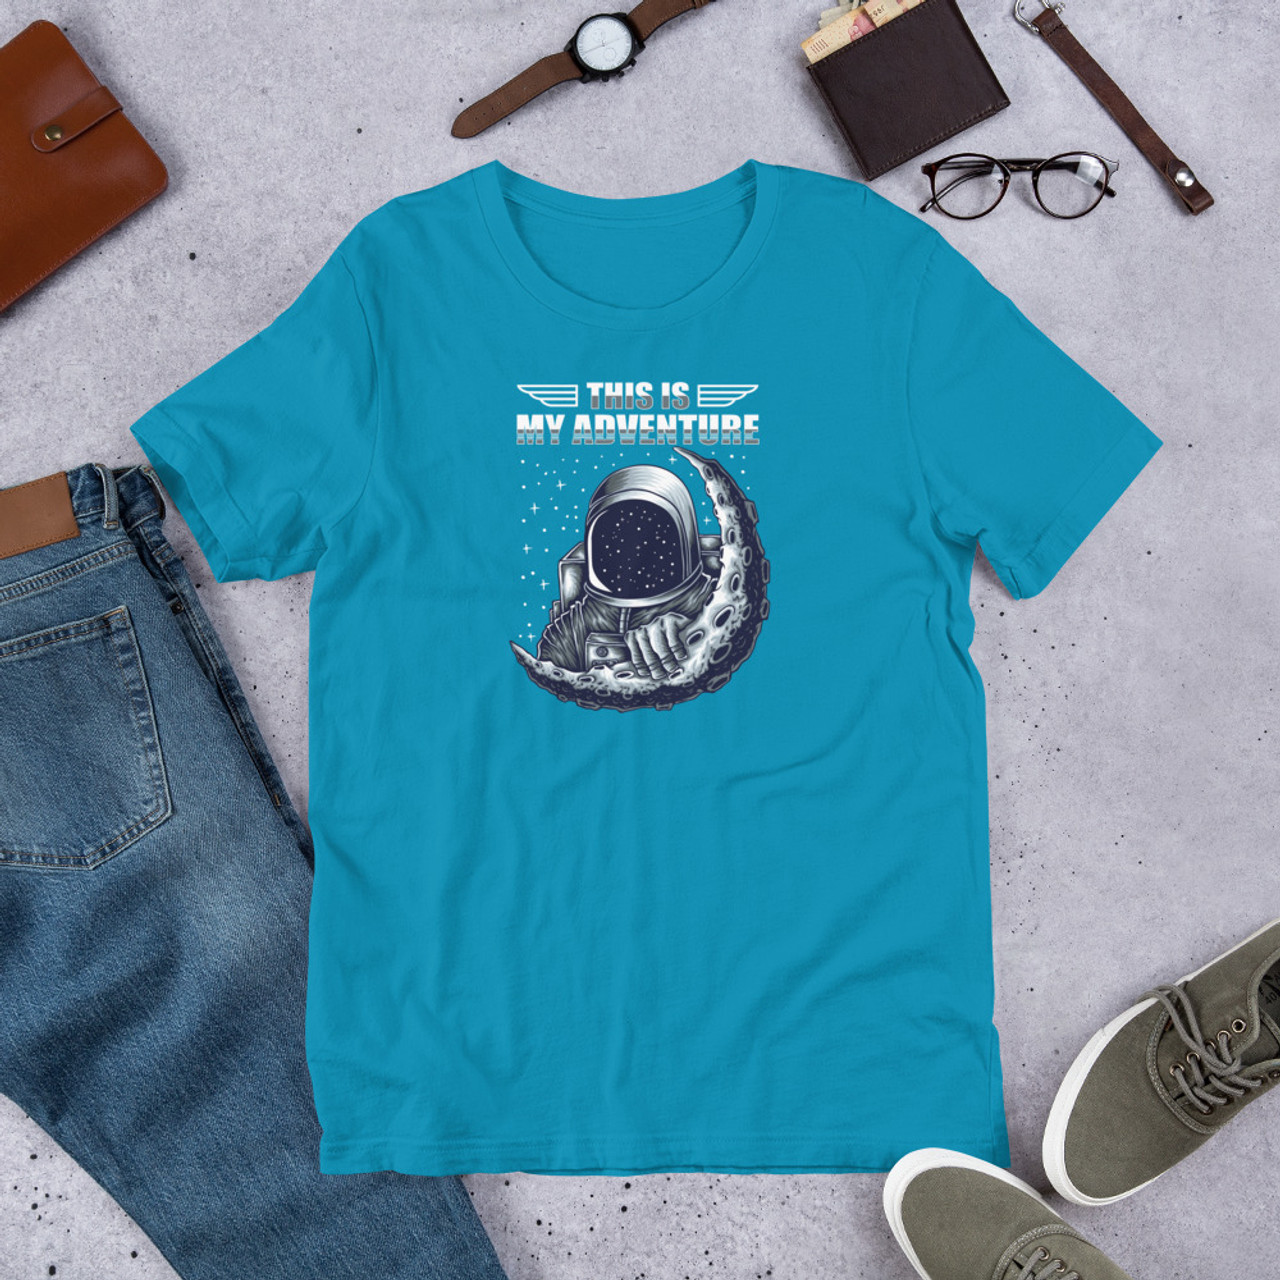 Aqua T-Shirt - Bella + Canvas 3001 Astronaut Adventure